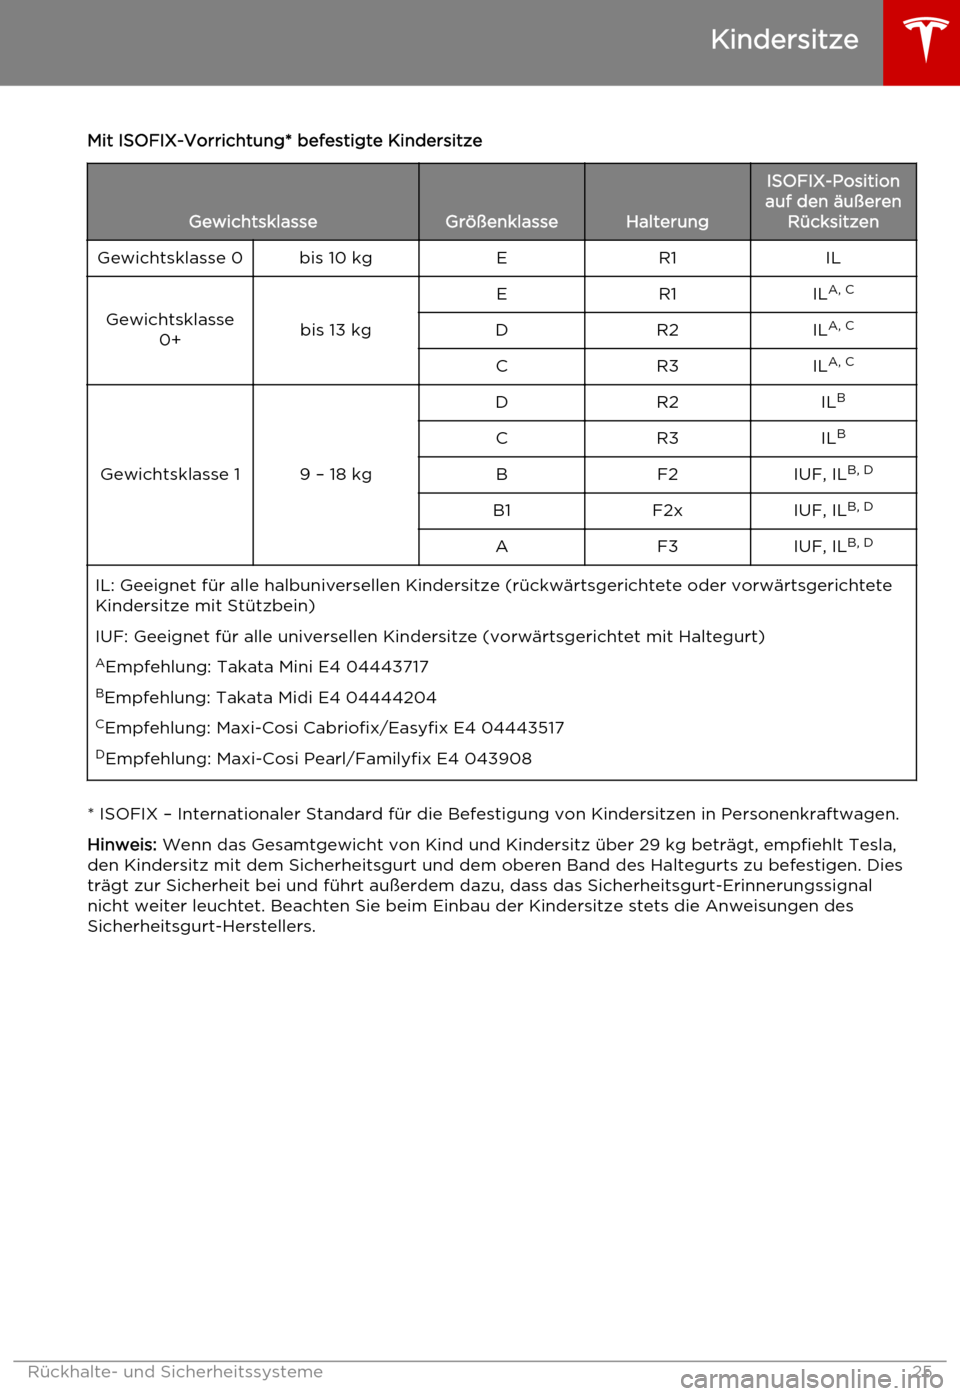 TESLA MODEL S 2015  Betriebsanleitung (in German) Mit ISOFIX-Vorrichtung* befestigte Kindersitze
GewichtsklasseGrößenklasseHalterung
ISOFIX-Position
auf den äußeren RücksitzenGewichtsklasse 0bis 10 kgER1IL
Gewichtsklasse 0+bis 13 kg
ER1ILA, CDR2